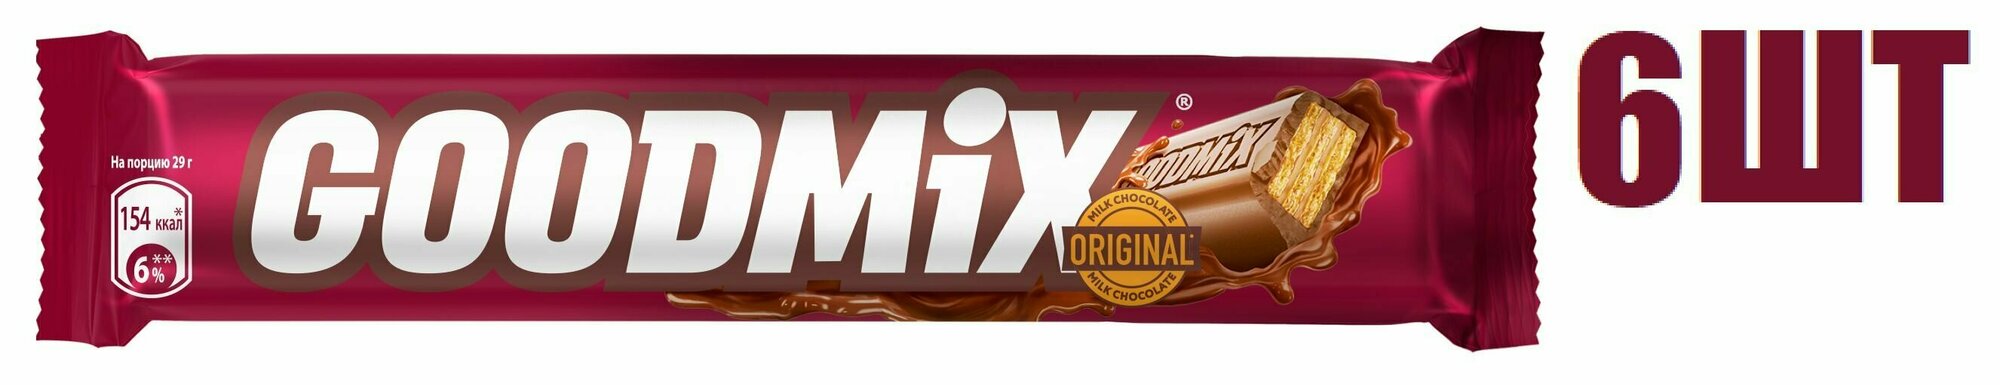 Шоколадный батончик, "Goodmix Original", в молочном шоколаде и с хрустящей вафлей, 29г 6 шт